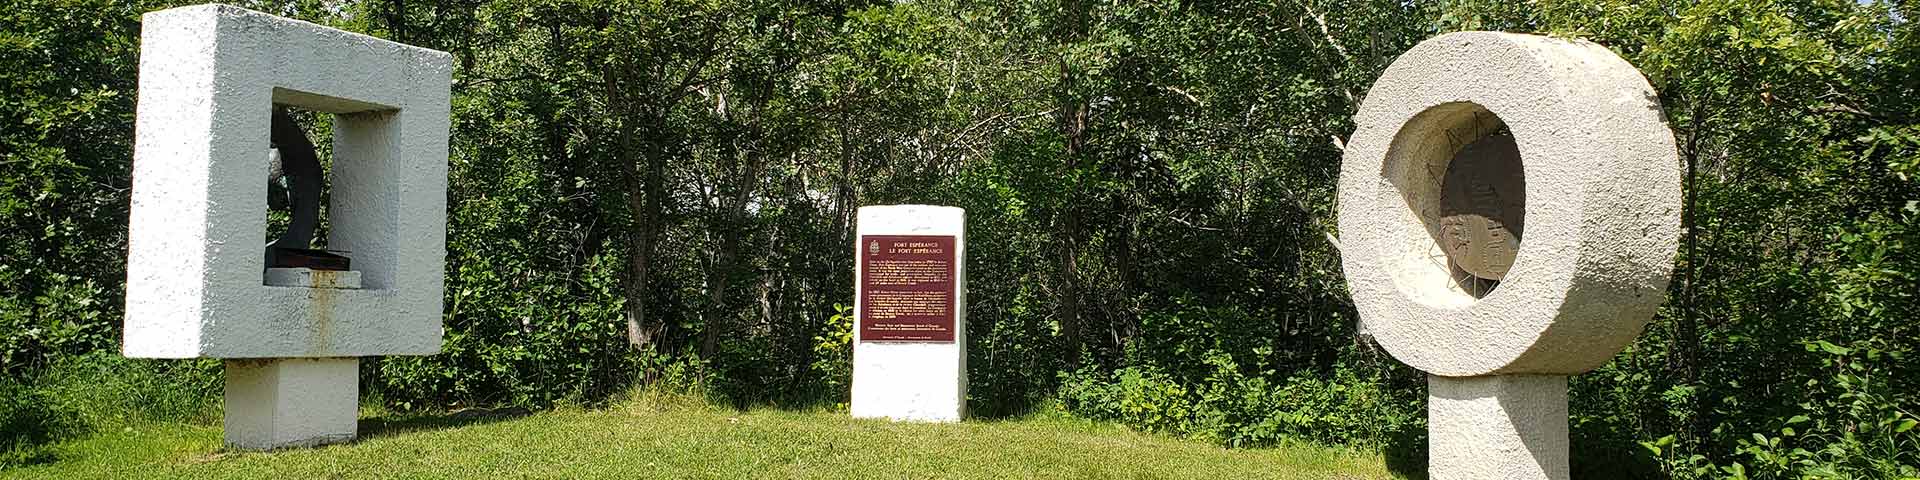 Plaque et sculptures de la Commission des lieux et monuments historiques du Canada à Fort-Espérance